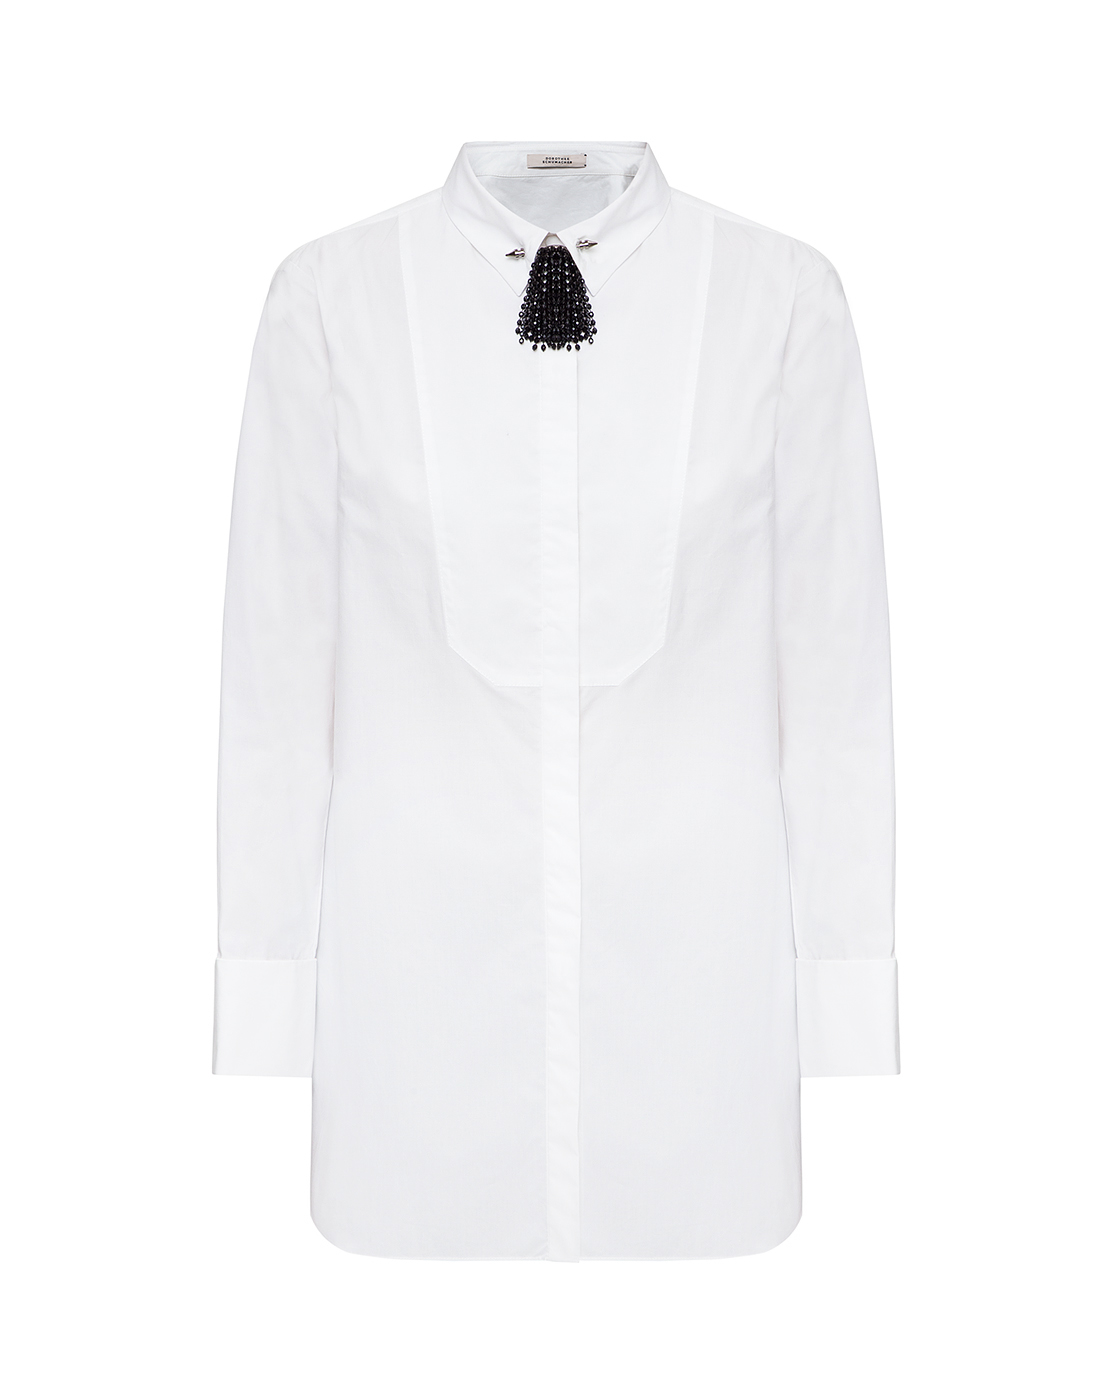 Женская белая рубашка с брошью Dorothee Schumacher S147704-1